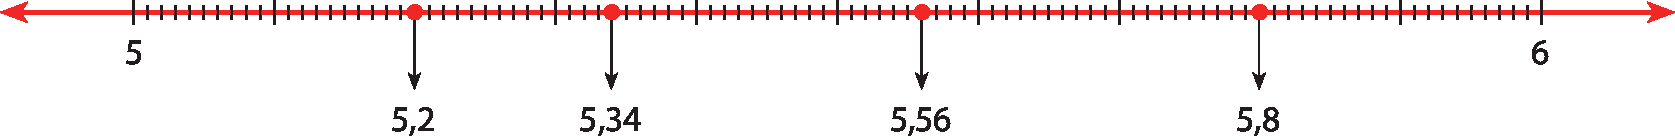 Ilustração. Reta numérica com os pontos 5; 5,2; 5,34; 5,56; 5,8 e 6 marcados.